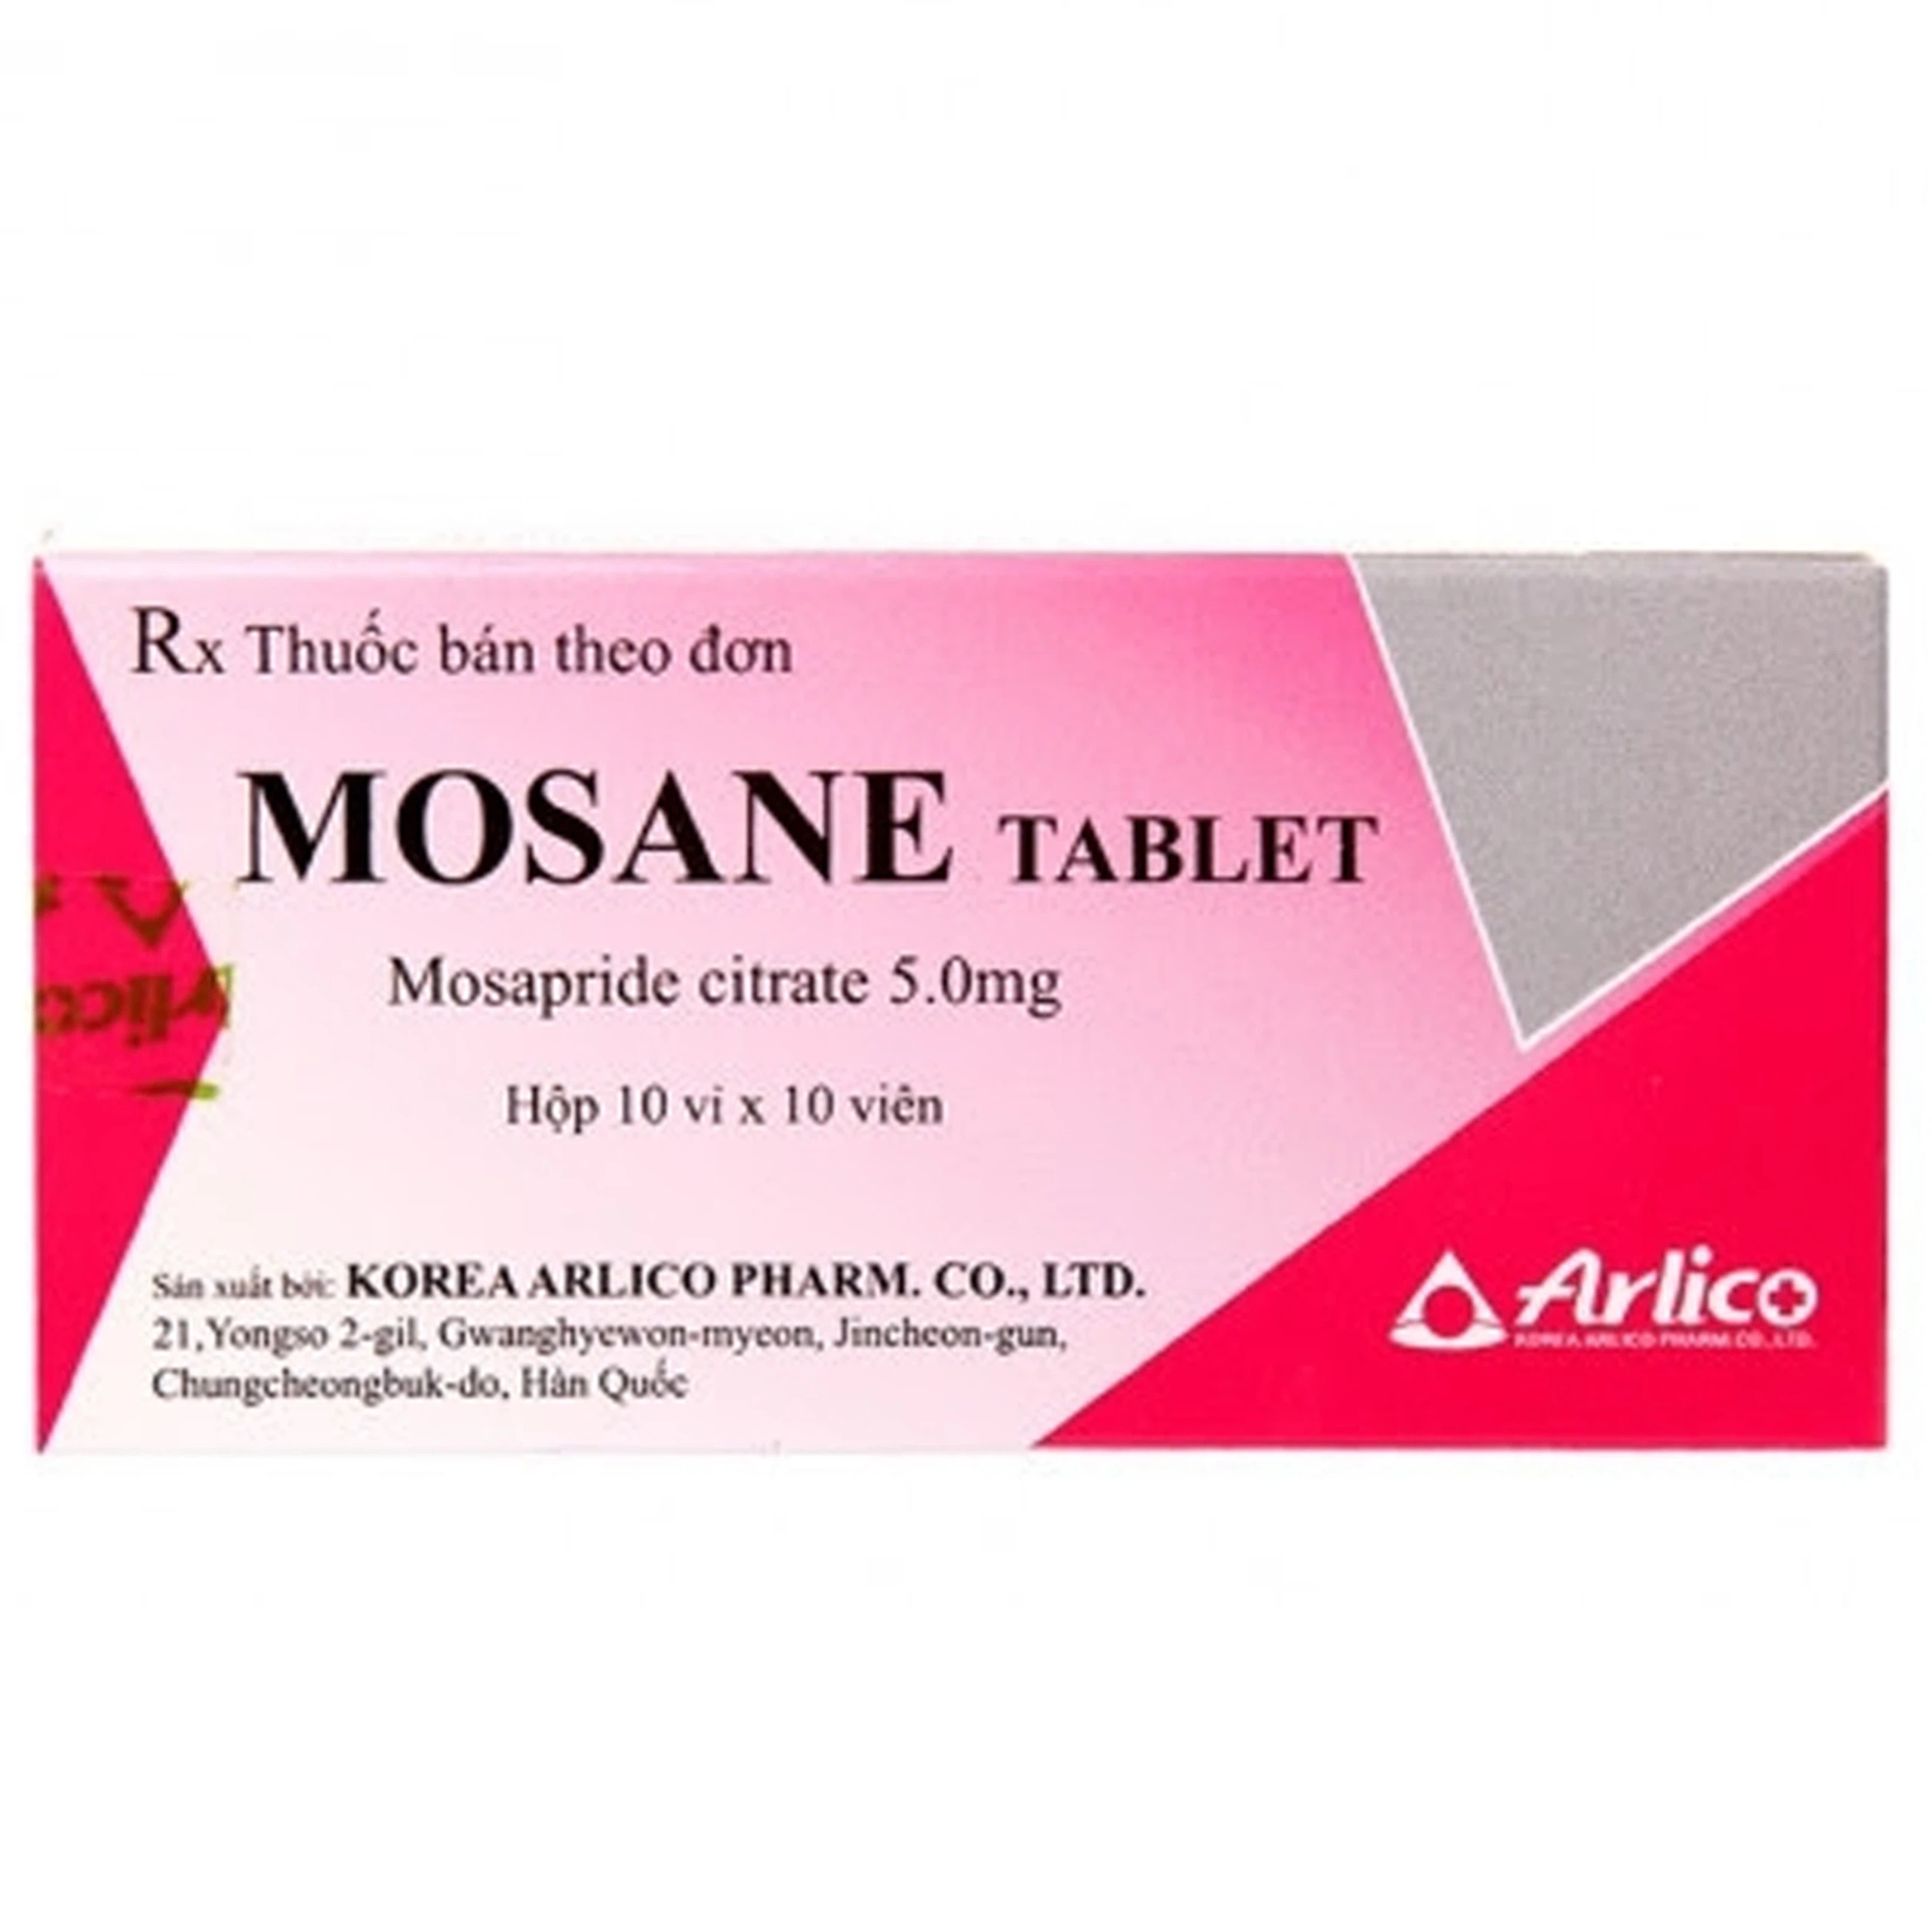 Viên nén Mosane Tablet 5mg Arlico điều trị bệnh trào ngược dạ dày - thực quản, ợ nóng (10 vỉ x 10 viên) 